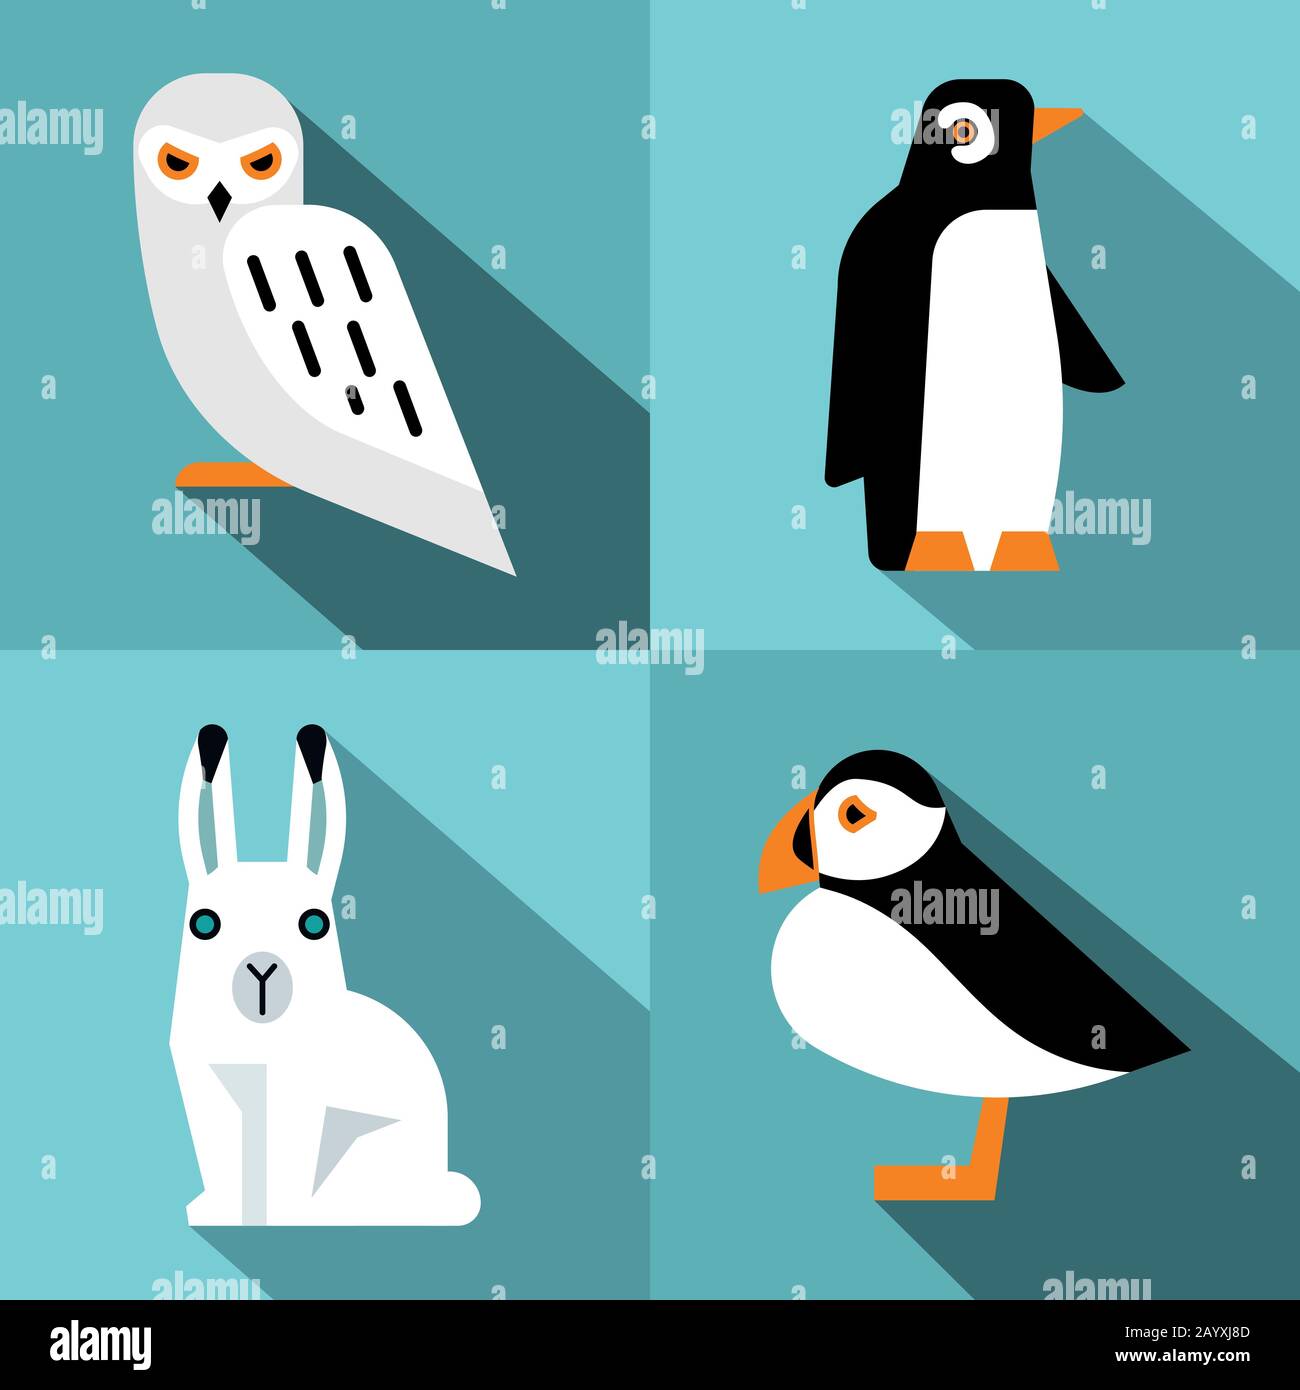 Animali polari in stile piatto con ombra lunga. Pinguino e lepre polare. Illustrazione del vettore Illustrazione Vettoriale